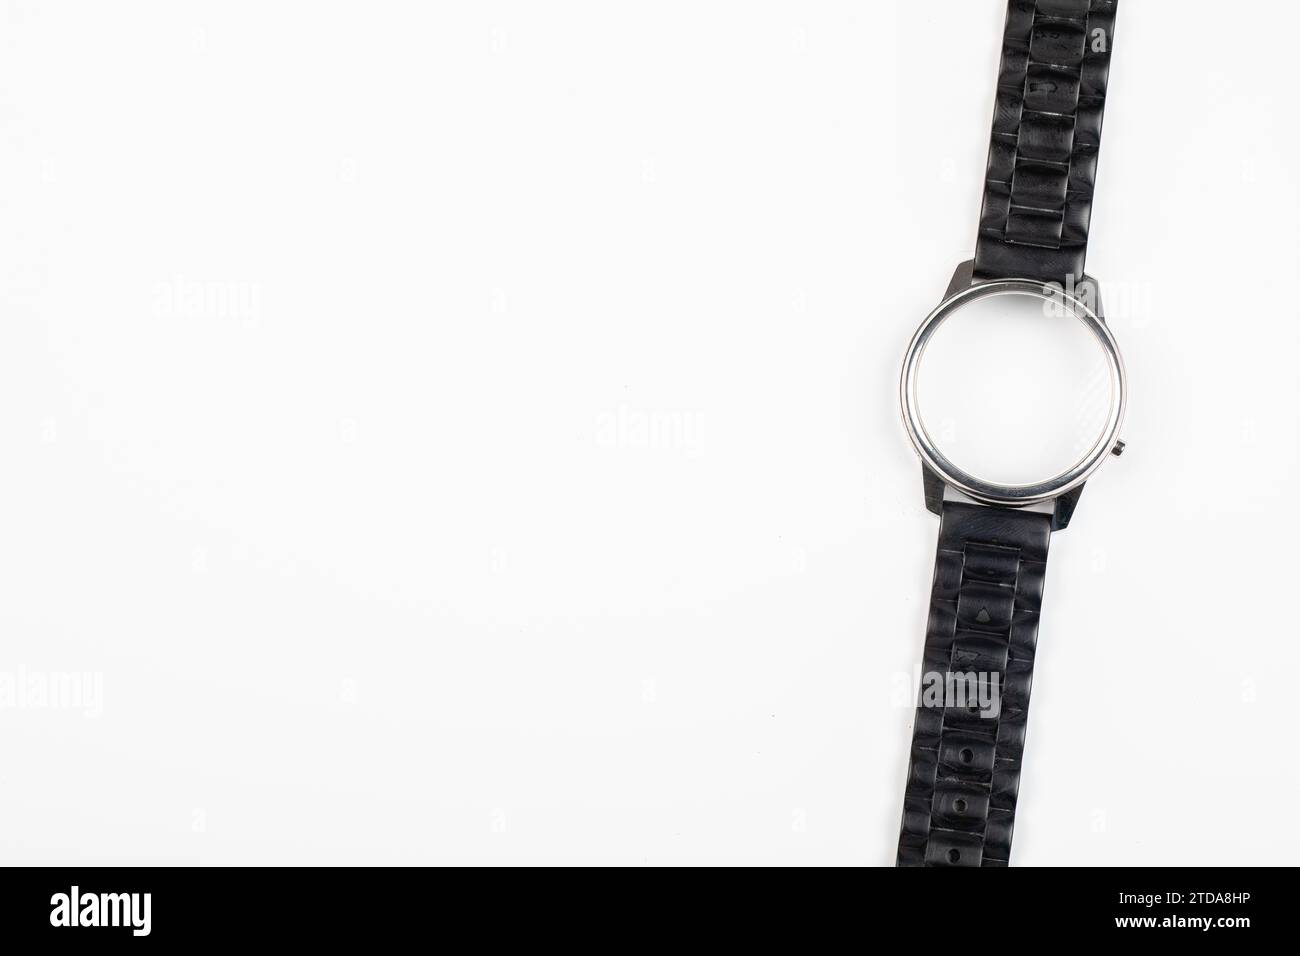 Zeitlose Eleganz: Armbanduhren auf weißem Hintergrund | Klassische, moderne und minimalistische Stile, keine Uhr! Stockfoto